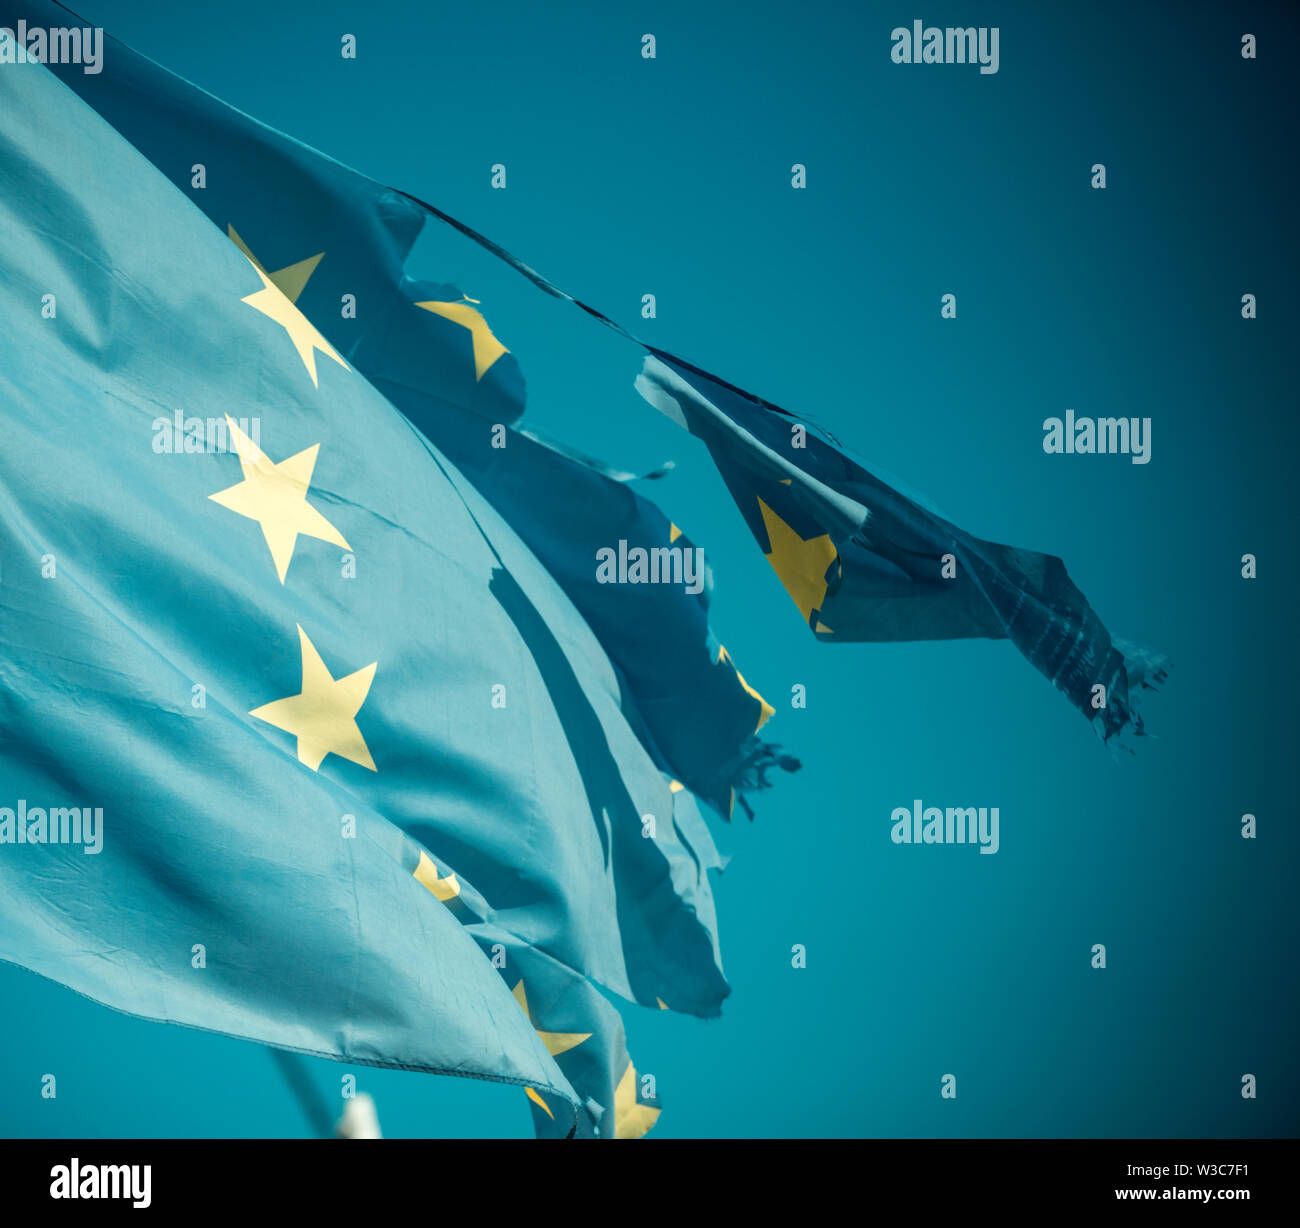 Flag è strappato a lato, simbolo di problemi, decadenza, disintegrazione, decomposizione, ripartizione. Unione europea dodici stelle bandiera strappata e con nodi in Foto Stock